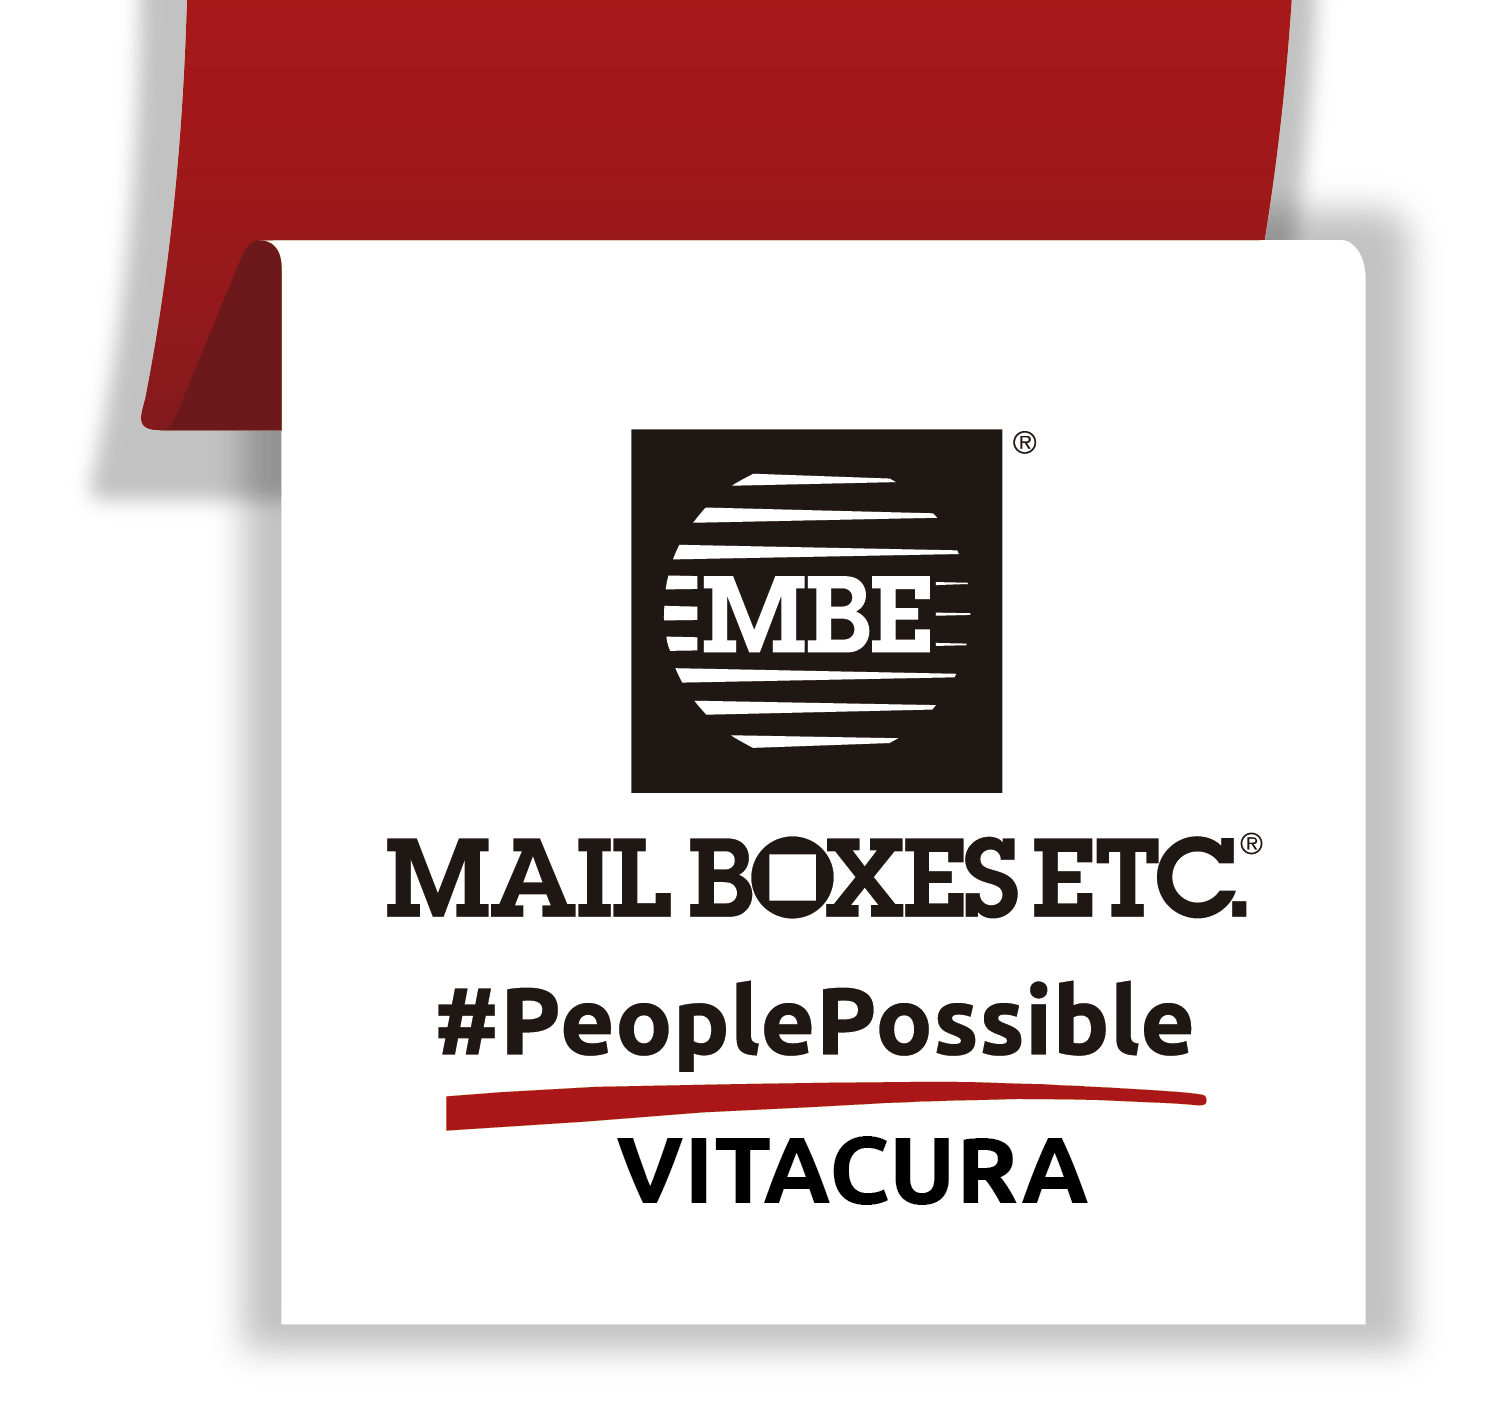 Mail boxes etc vitacura